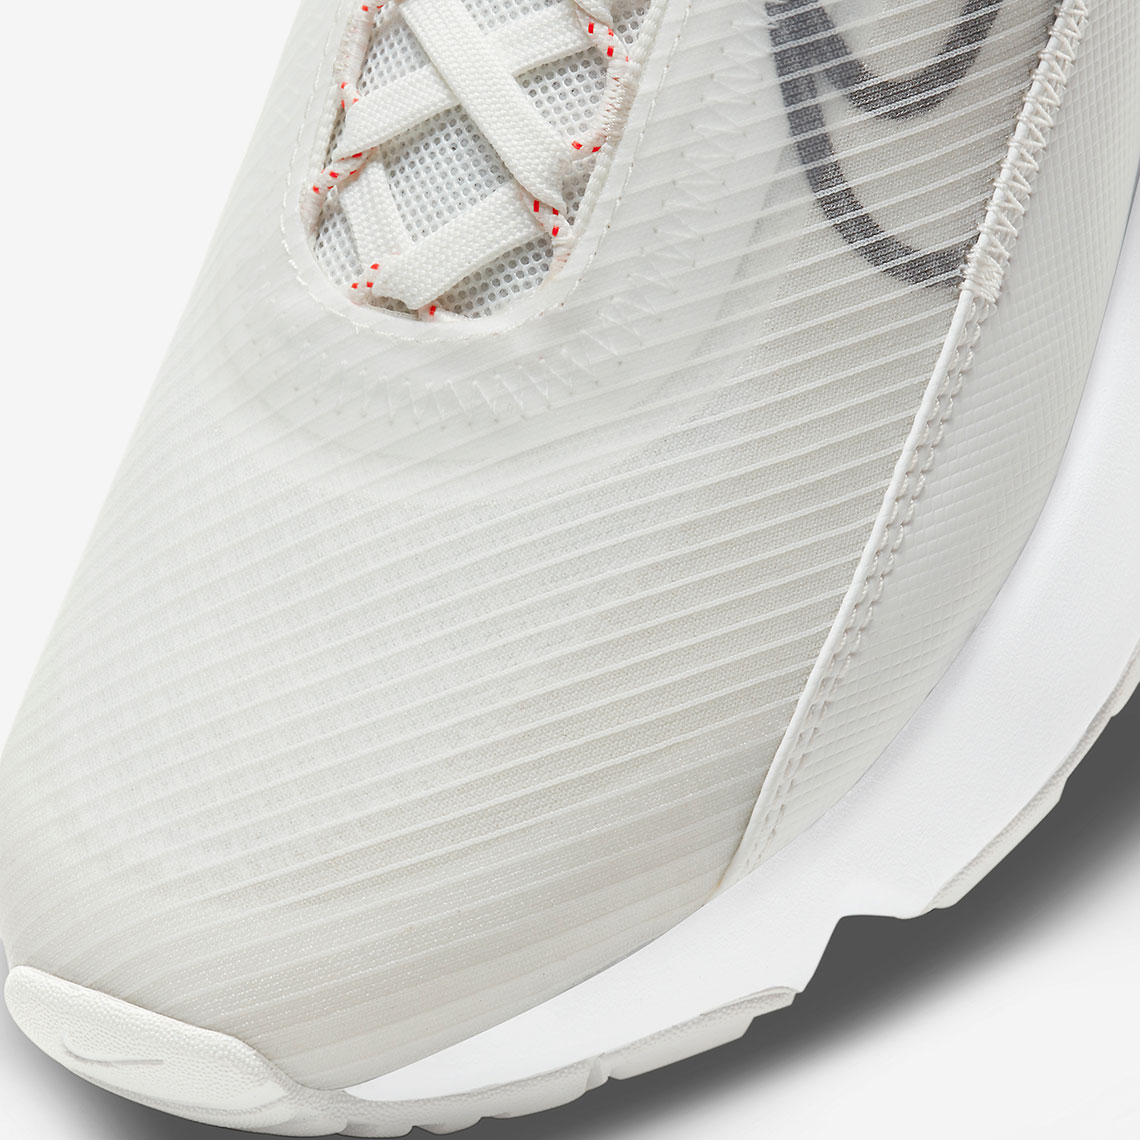 Nike Air Max 2090 Summit White CV8727-101 | SneakerNews.com